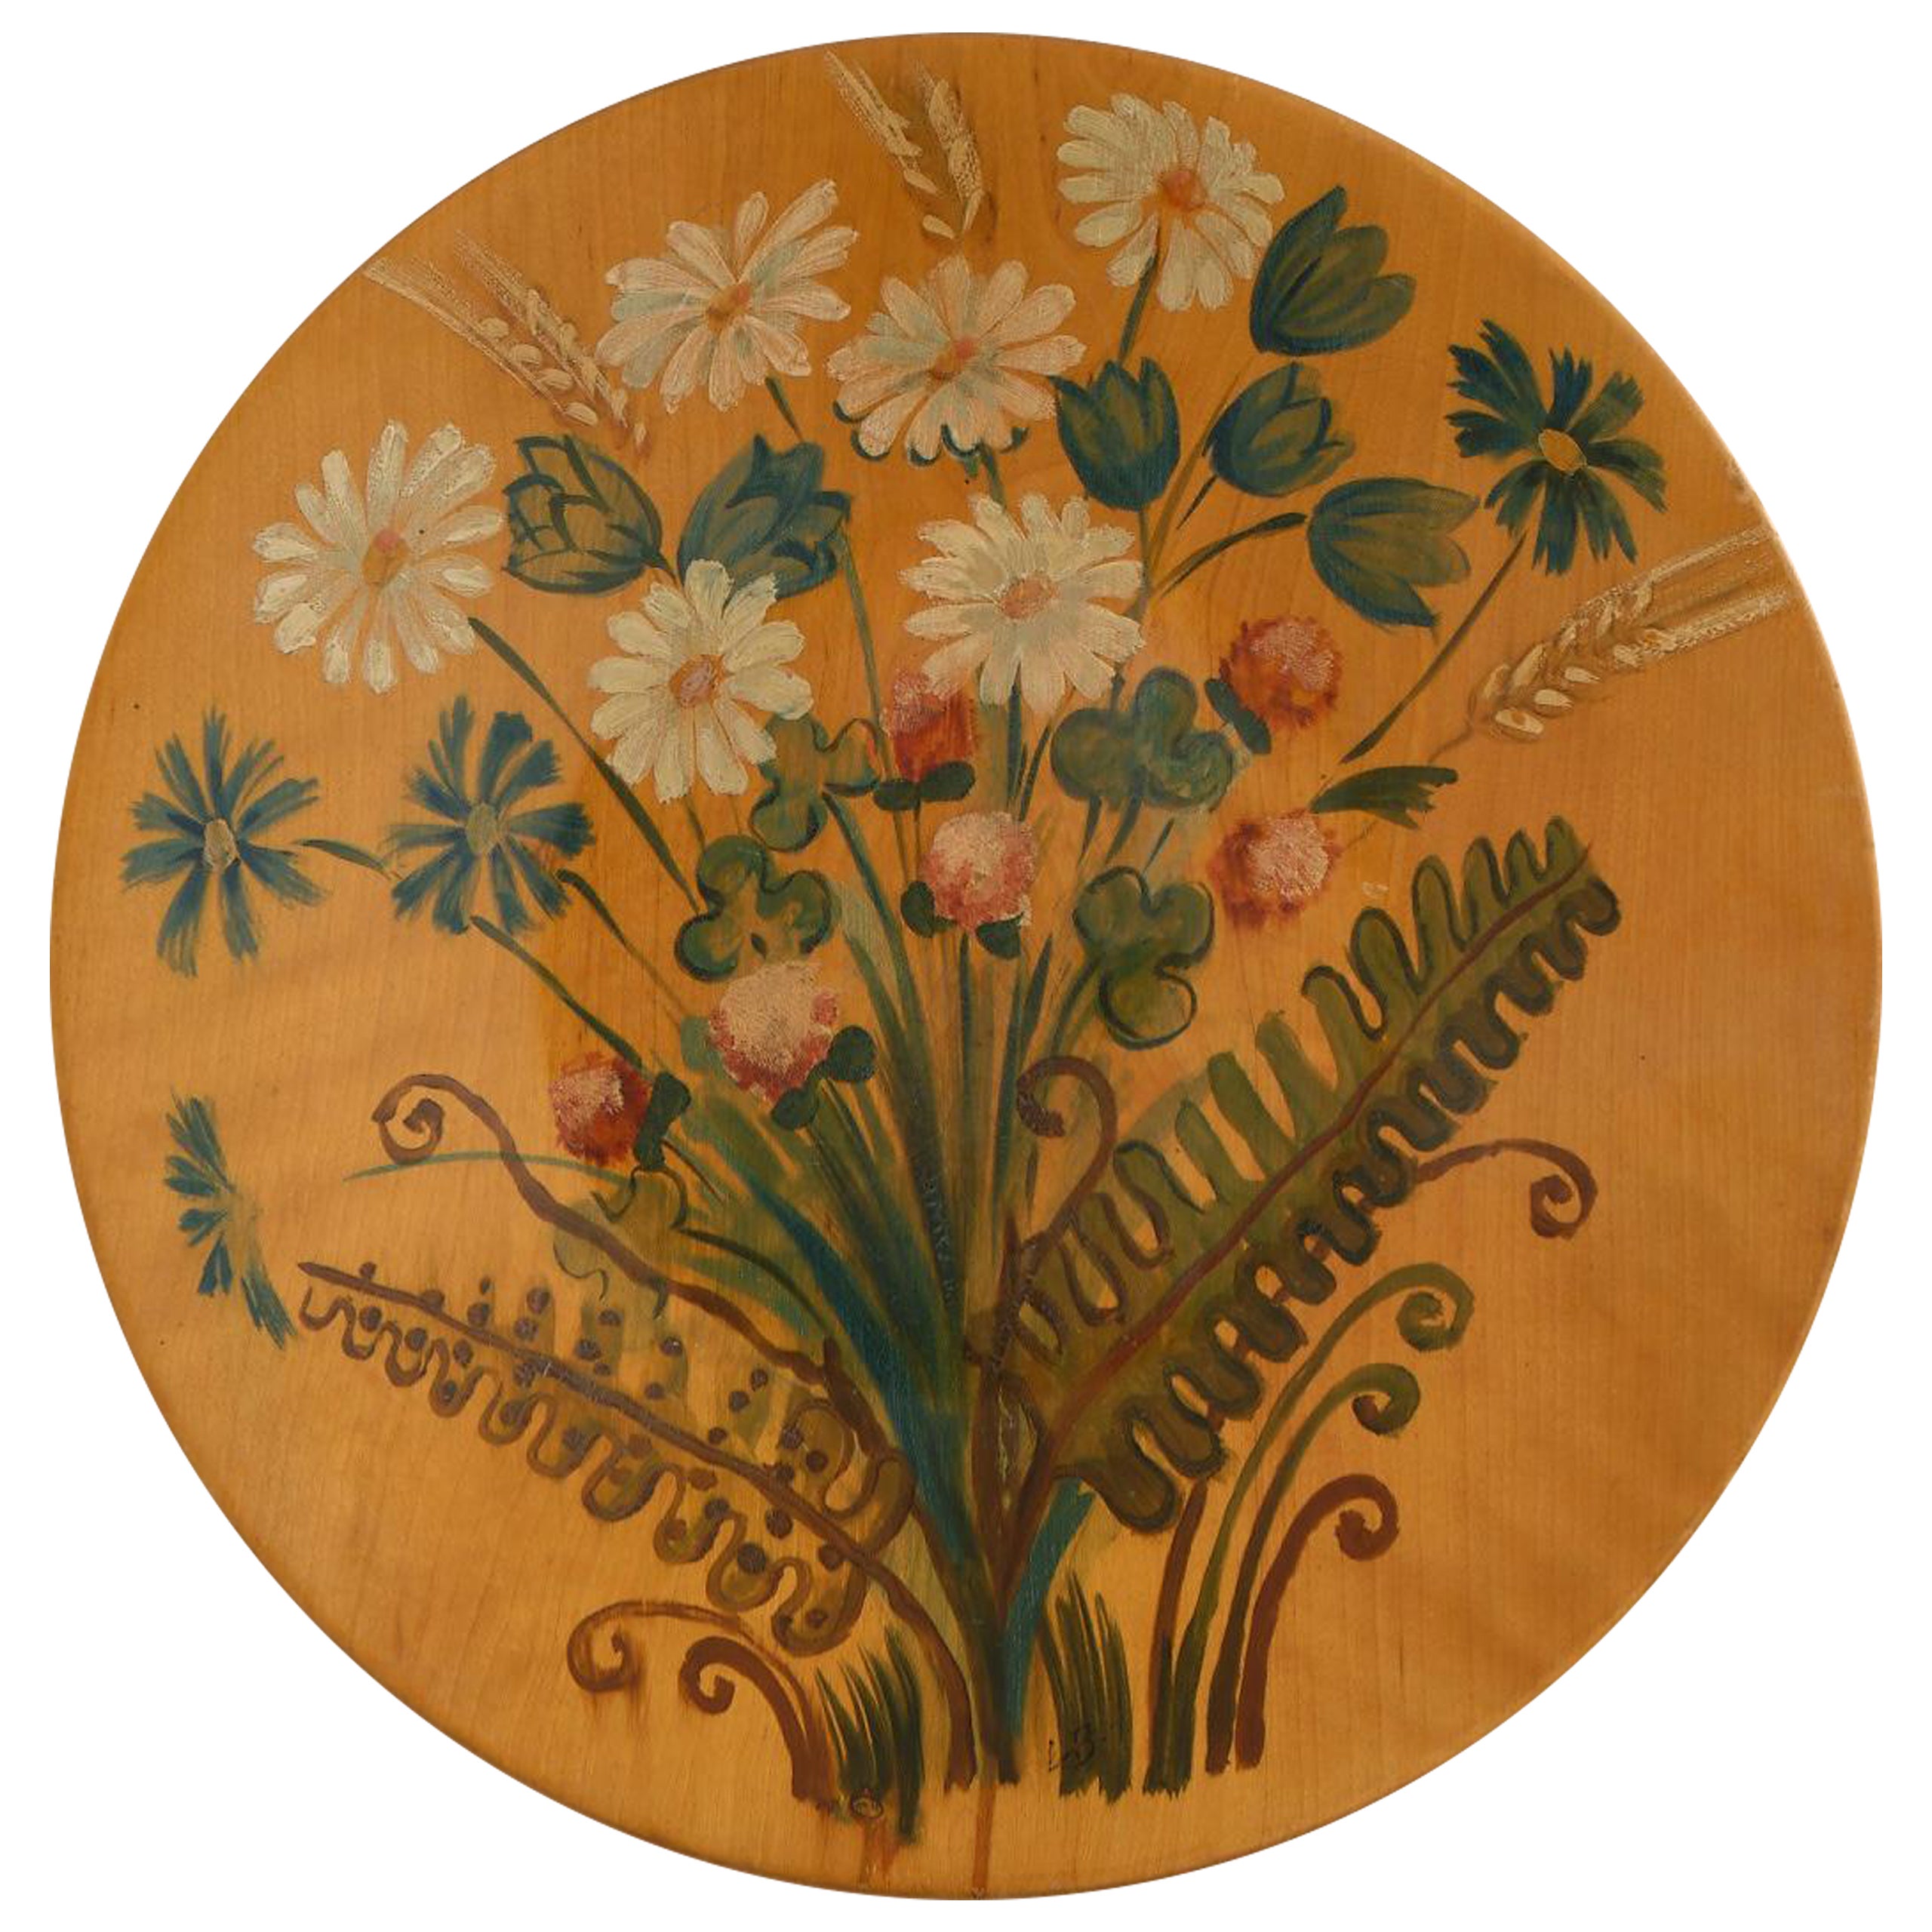 Schwedisches handbemaltes Wandbehangsmöbel aus Holz, 1930er Jahre, dekoriert mit botanischen Motiven